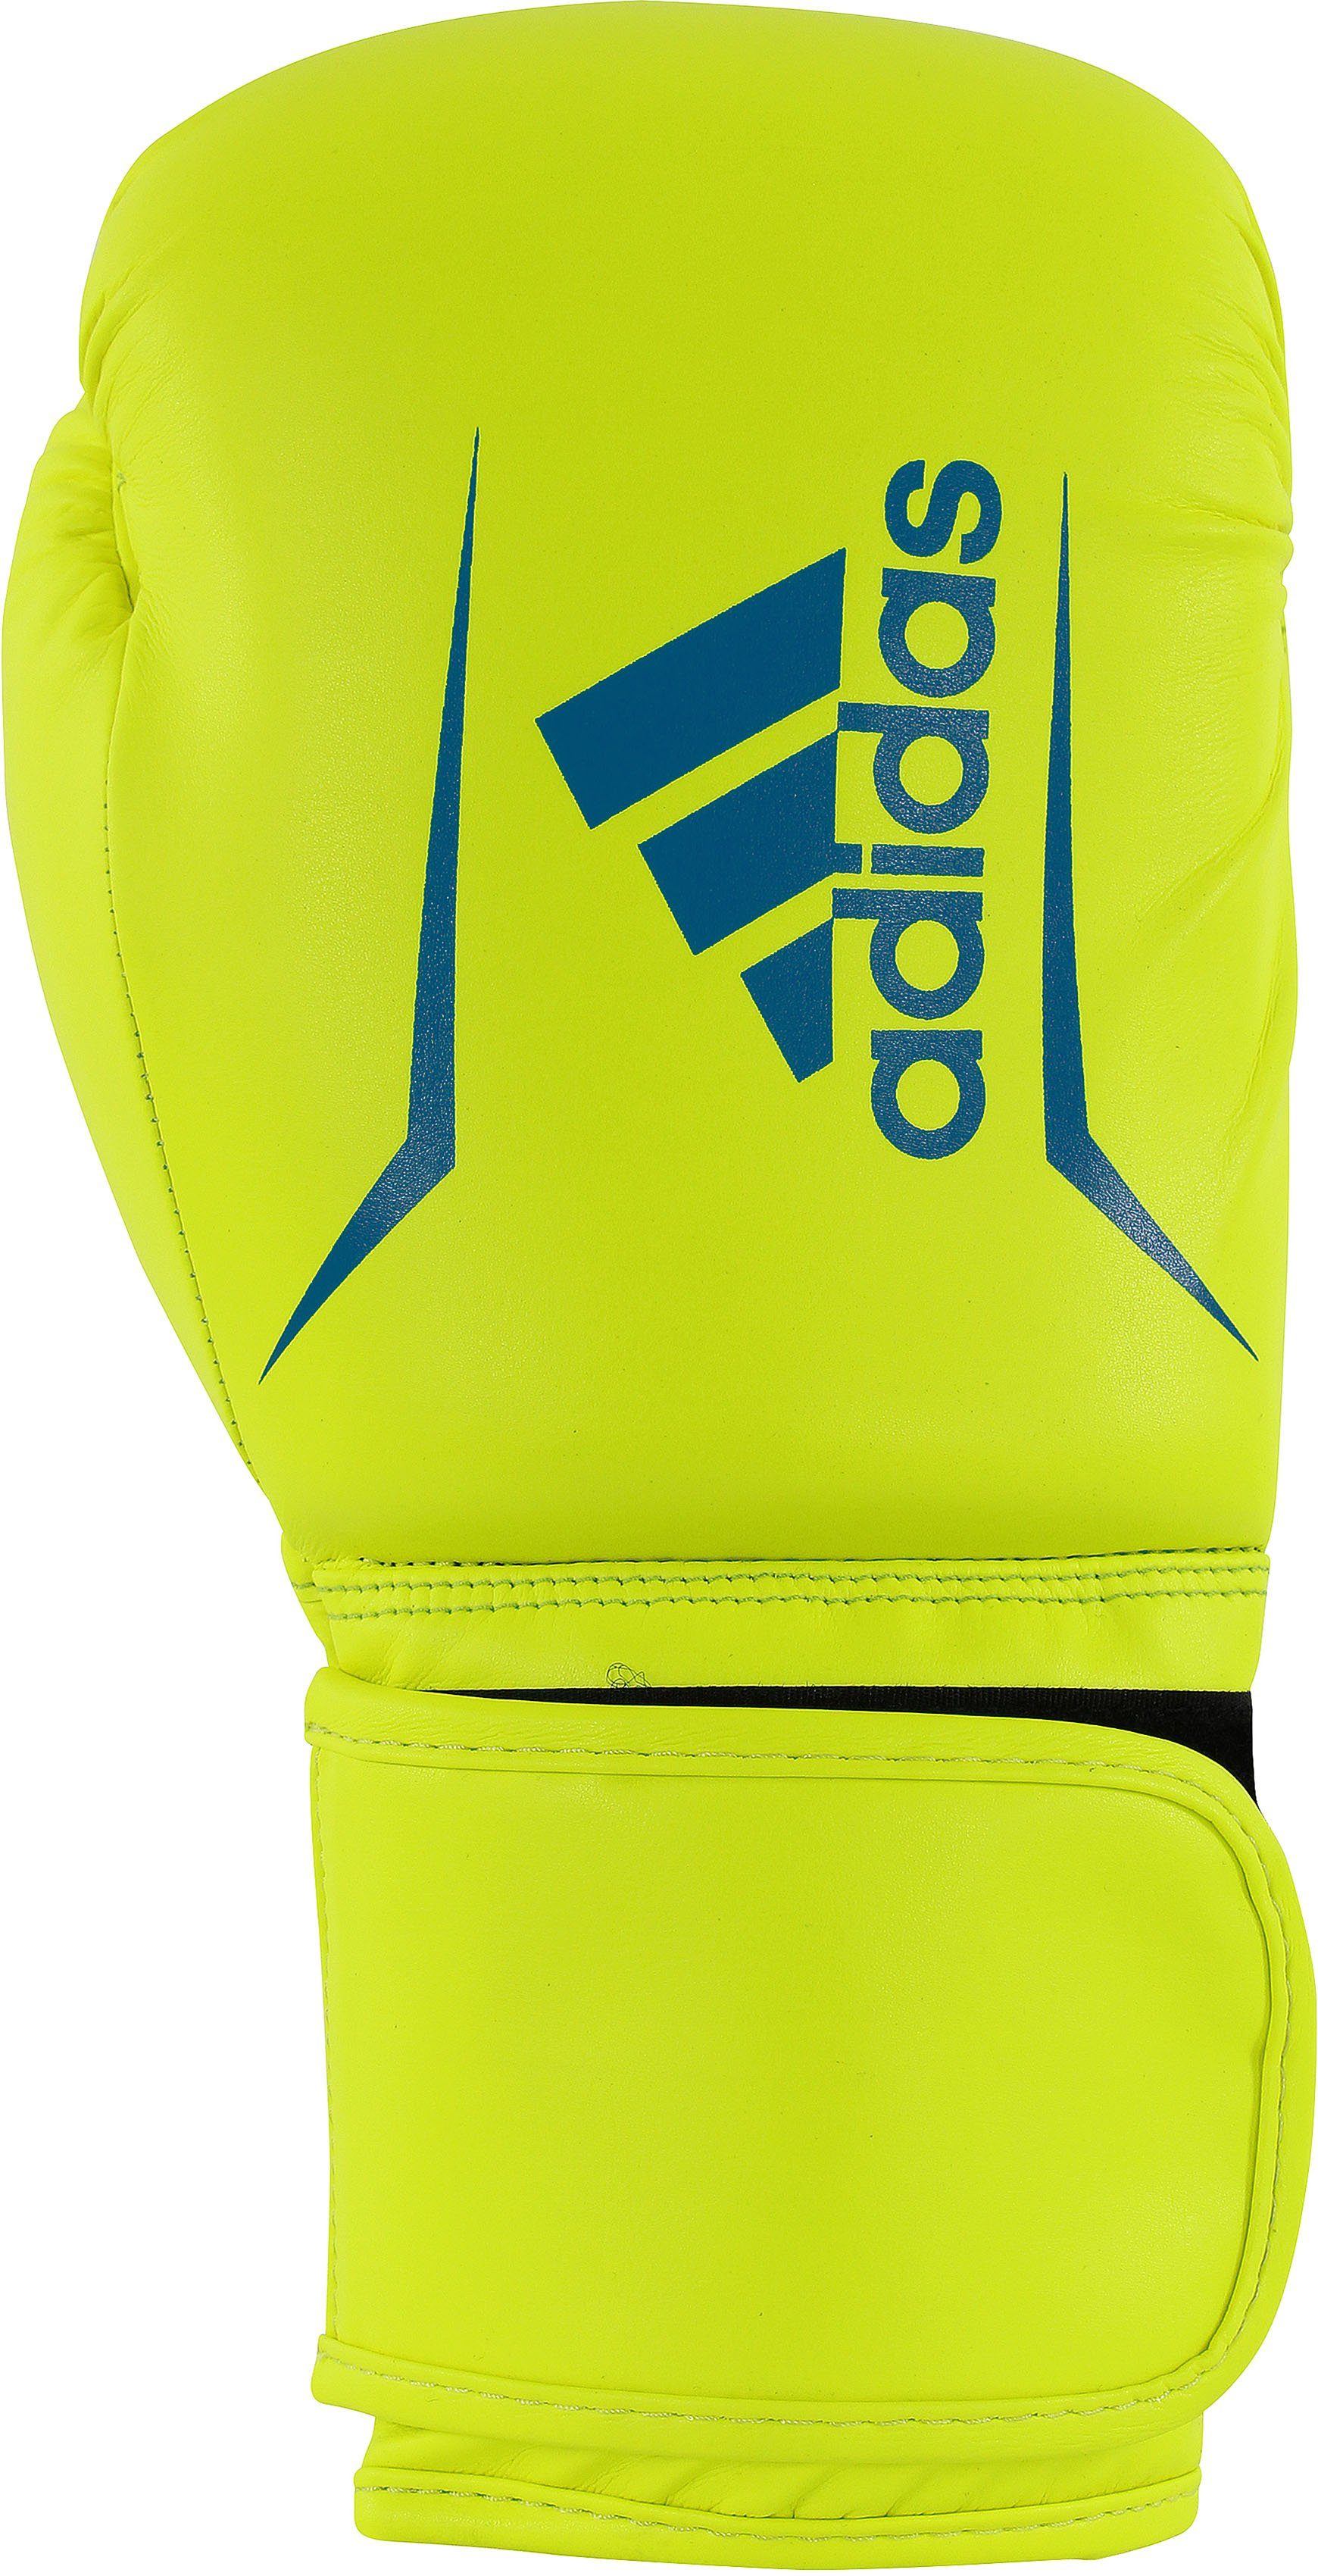 Preis und Auswahl an adidas Performance Boxhandschuhe Speed 50 blau/gelb